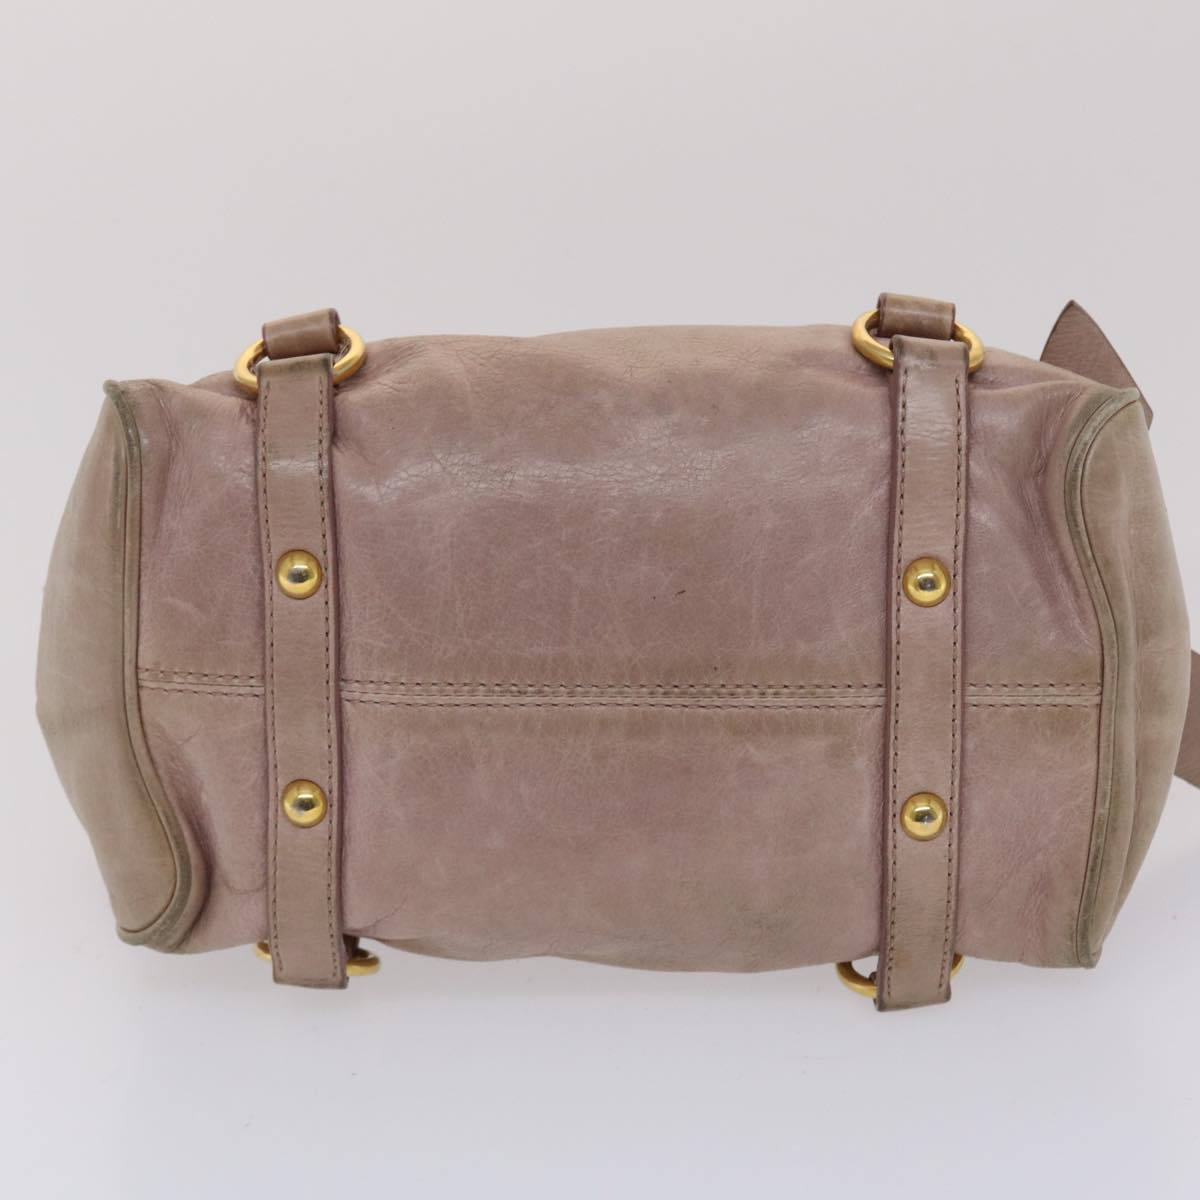 Miu Miu Hand Bag Leather 2way Pink Auth yk7991